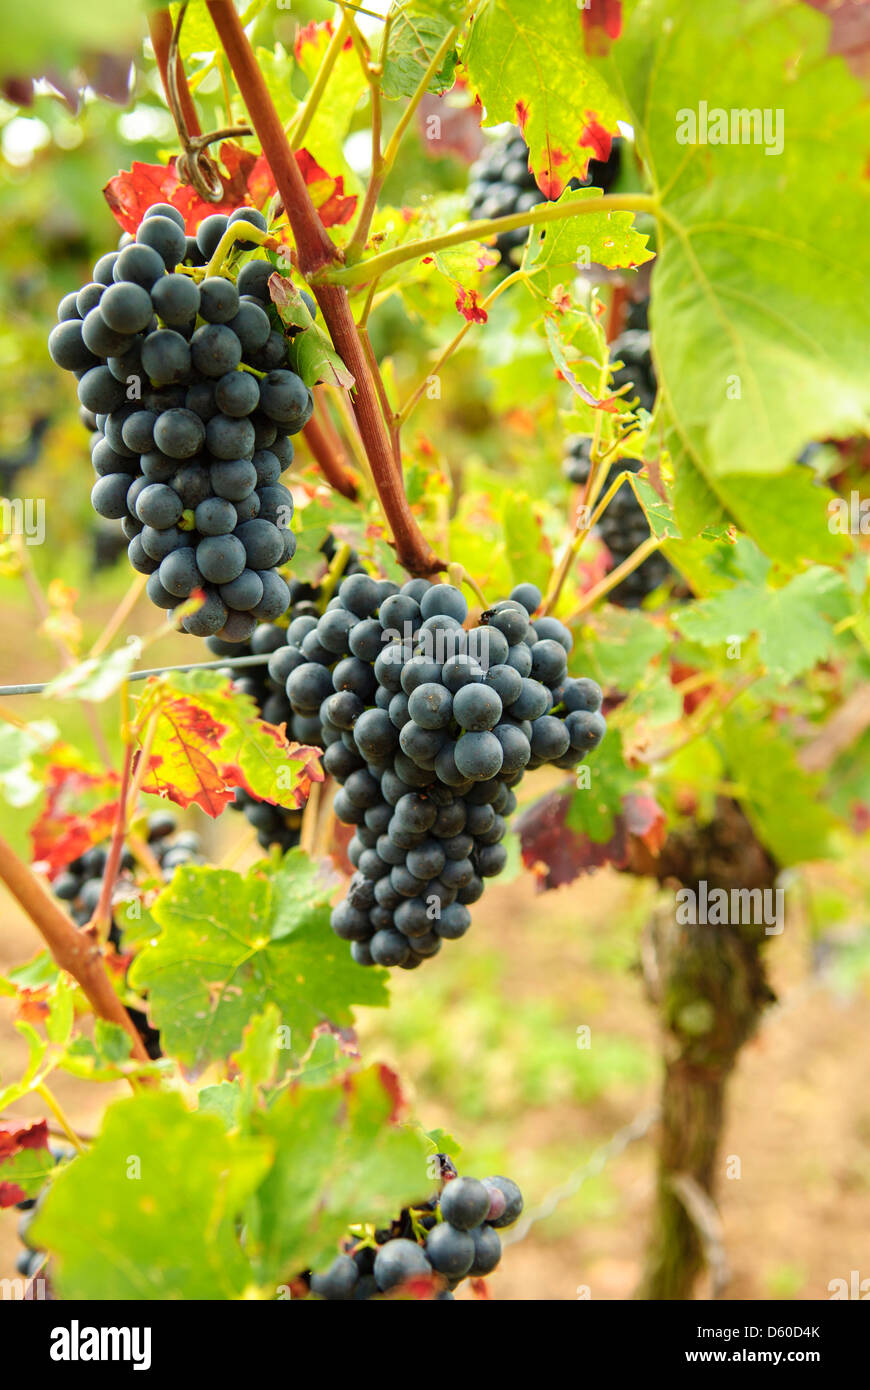 Black grapes on vine, vineyard, Rhineland-Palatinate, Germany, Europe Stock Photo